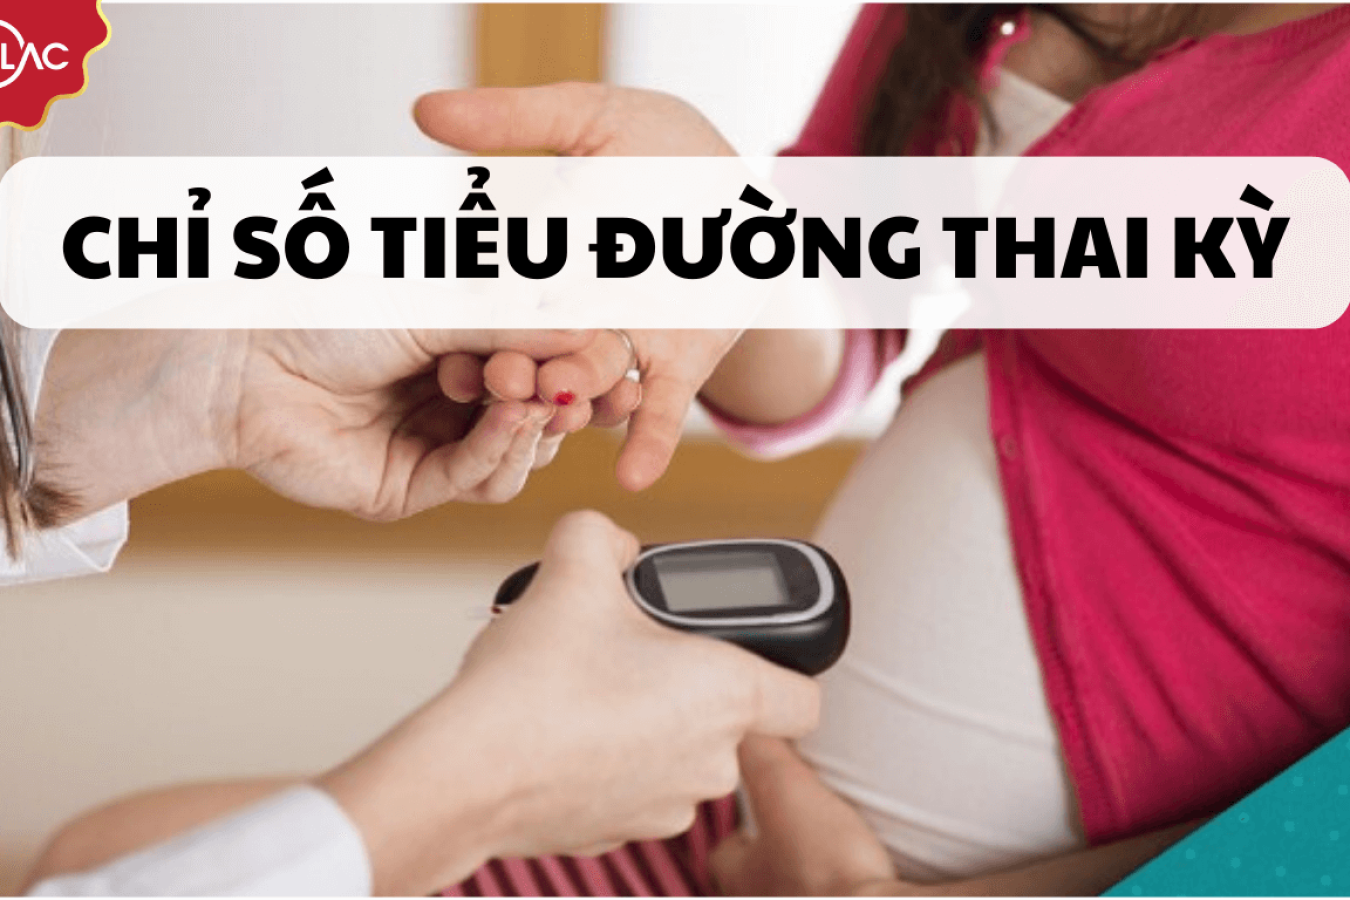 Tiểu đường thai kỳ - Nguyên nhân, triệu chứng và cách kiểm soát